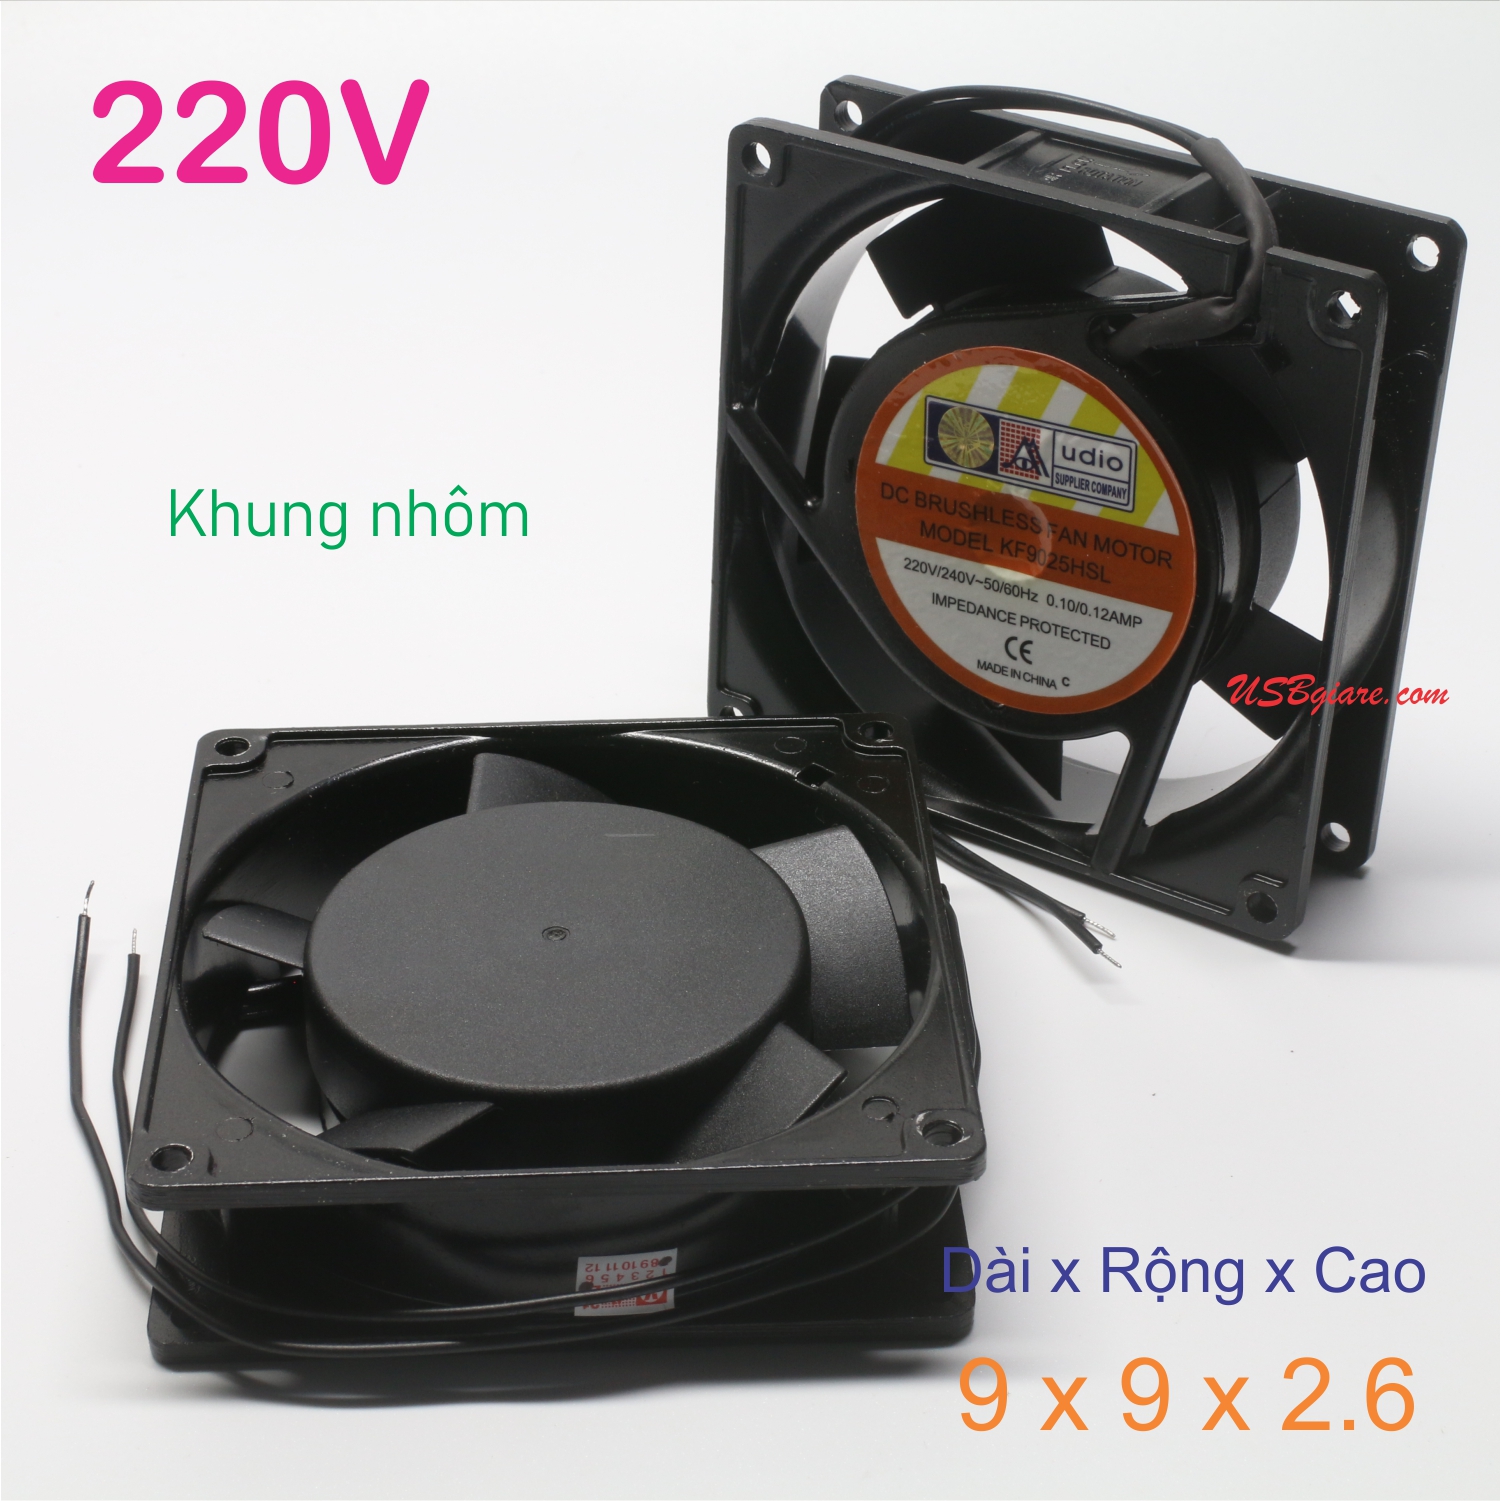 Quạt tản nhiệt 220V 9x9x2.6cm, Fan 220V 9x9x2.6cm (khung nhôm)【USBgiare,Com】